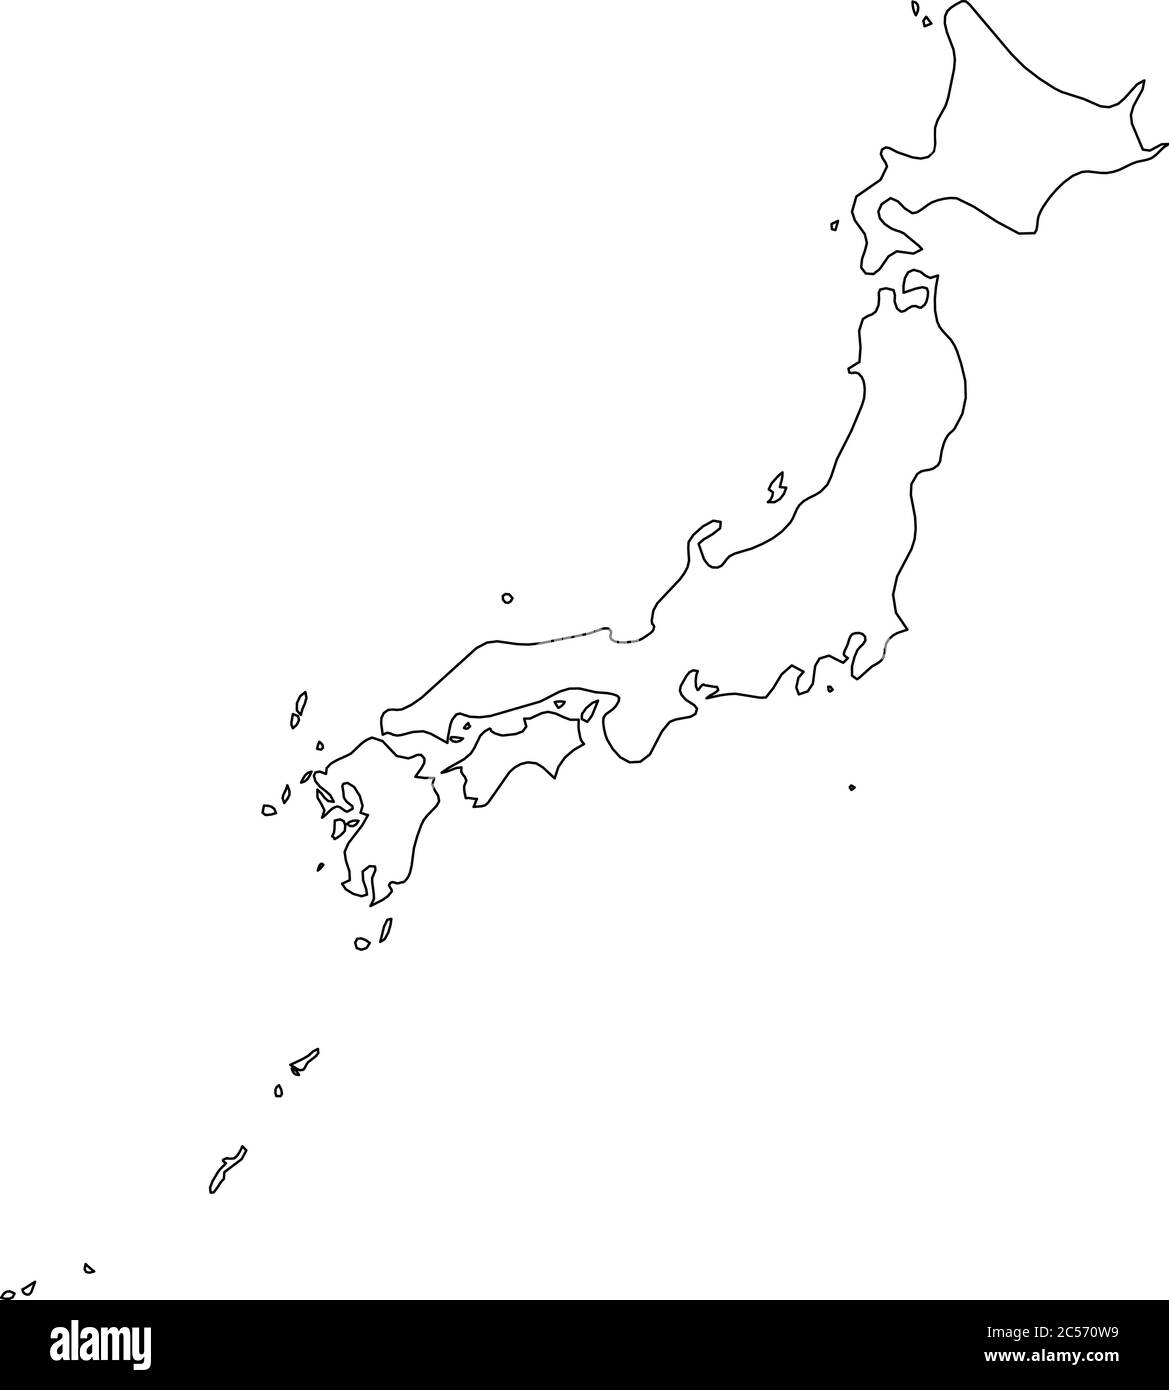 Japon - carte de la frontière noire unie de la région du pays. Illustration simple à vecteur plat. Illustration de Vecteur